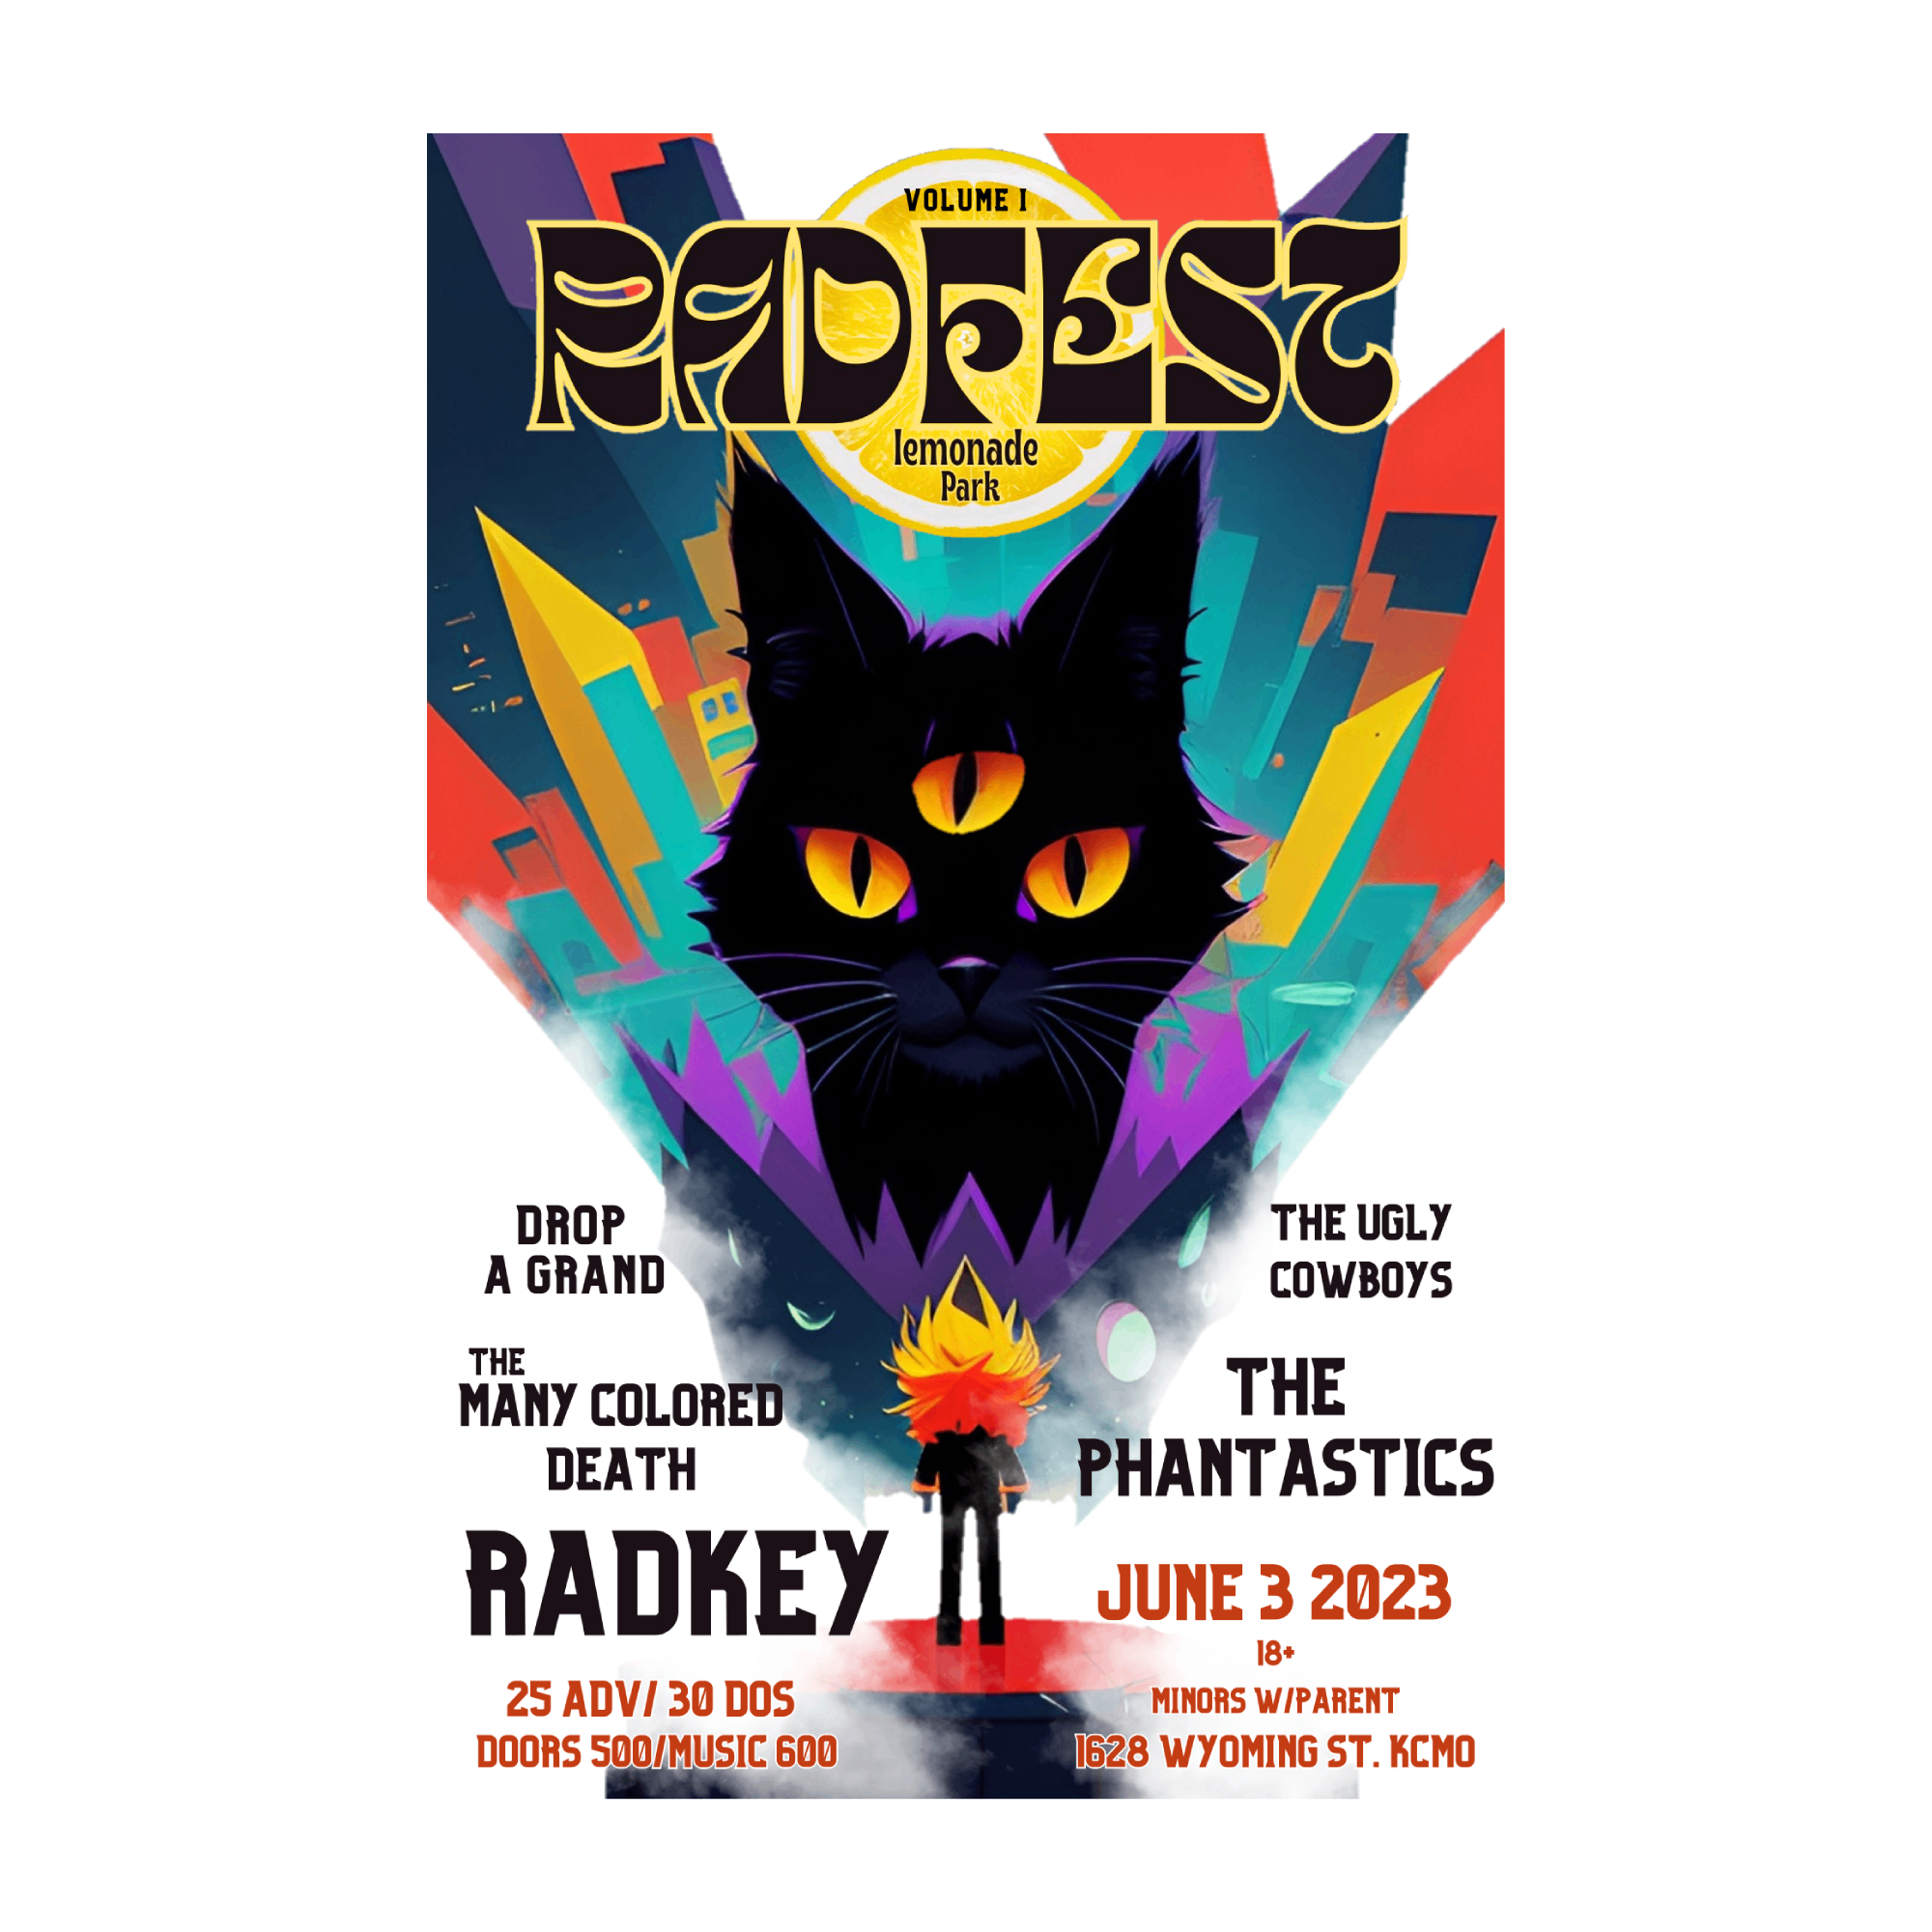 Radkey | RadFest Volume 1 Poster